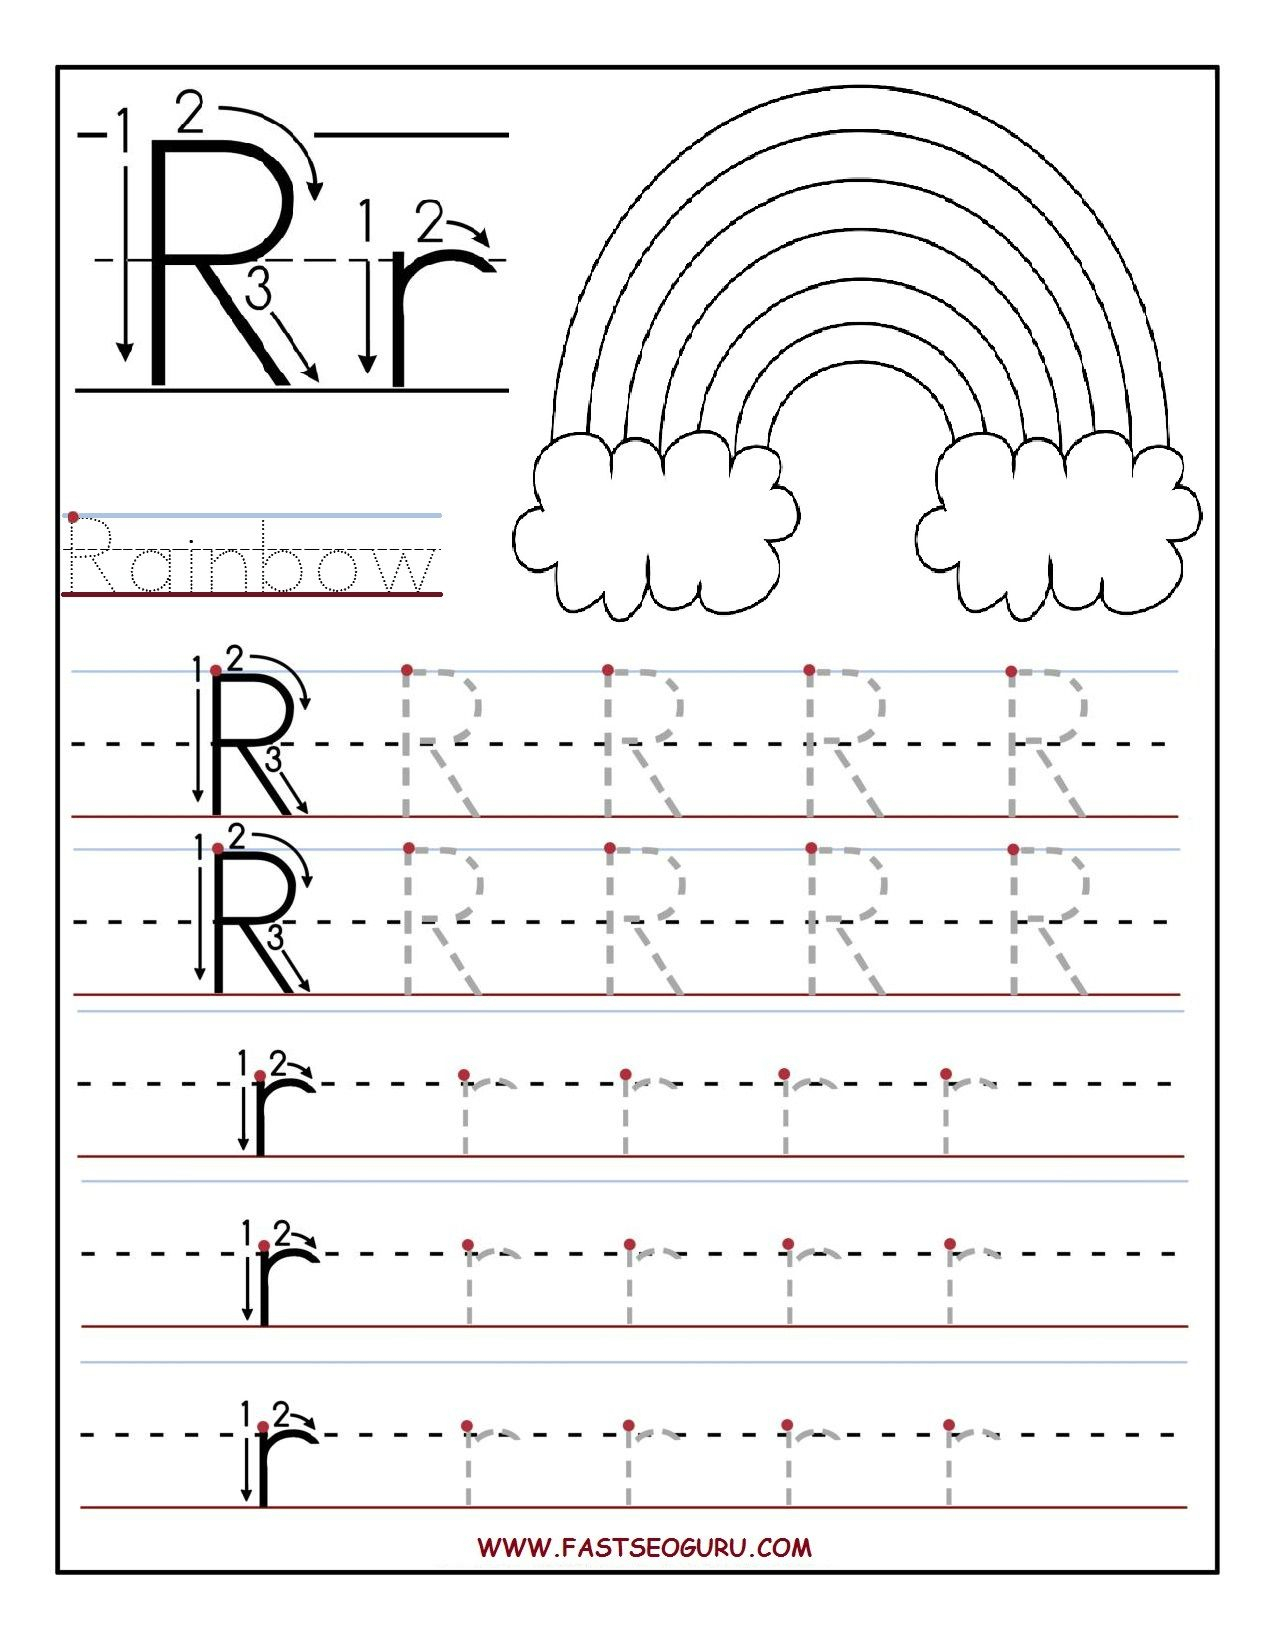 Printable Letter R Tracing Worksheets For Preschool intended for R Letter Worksheets